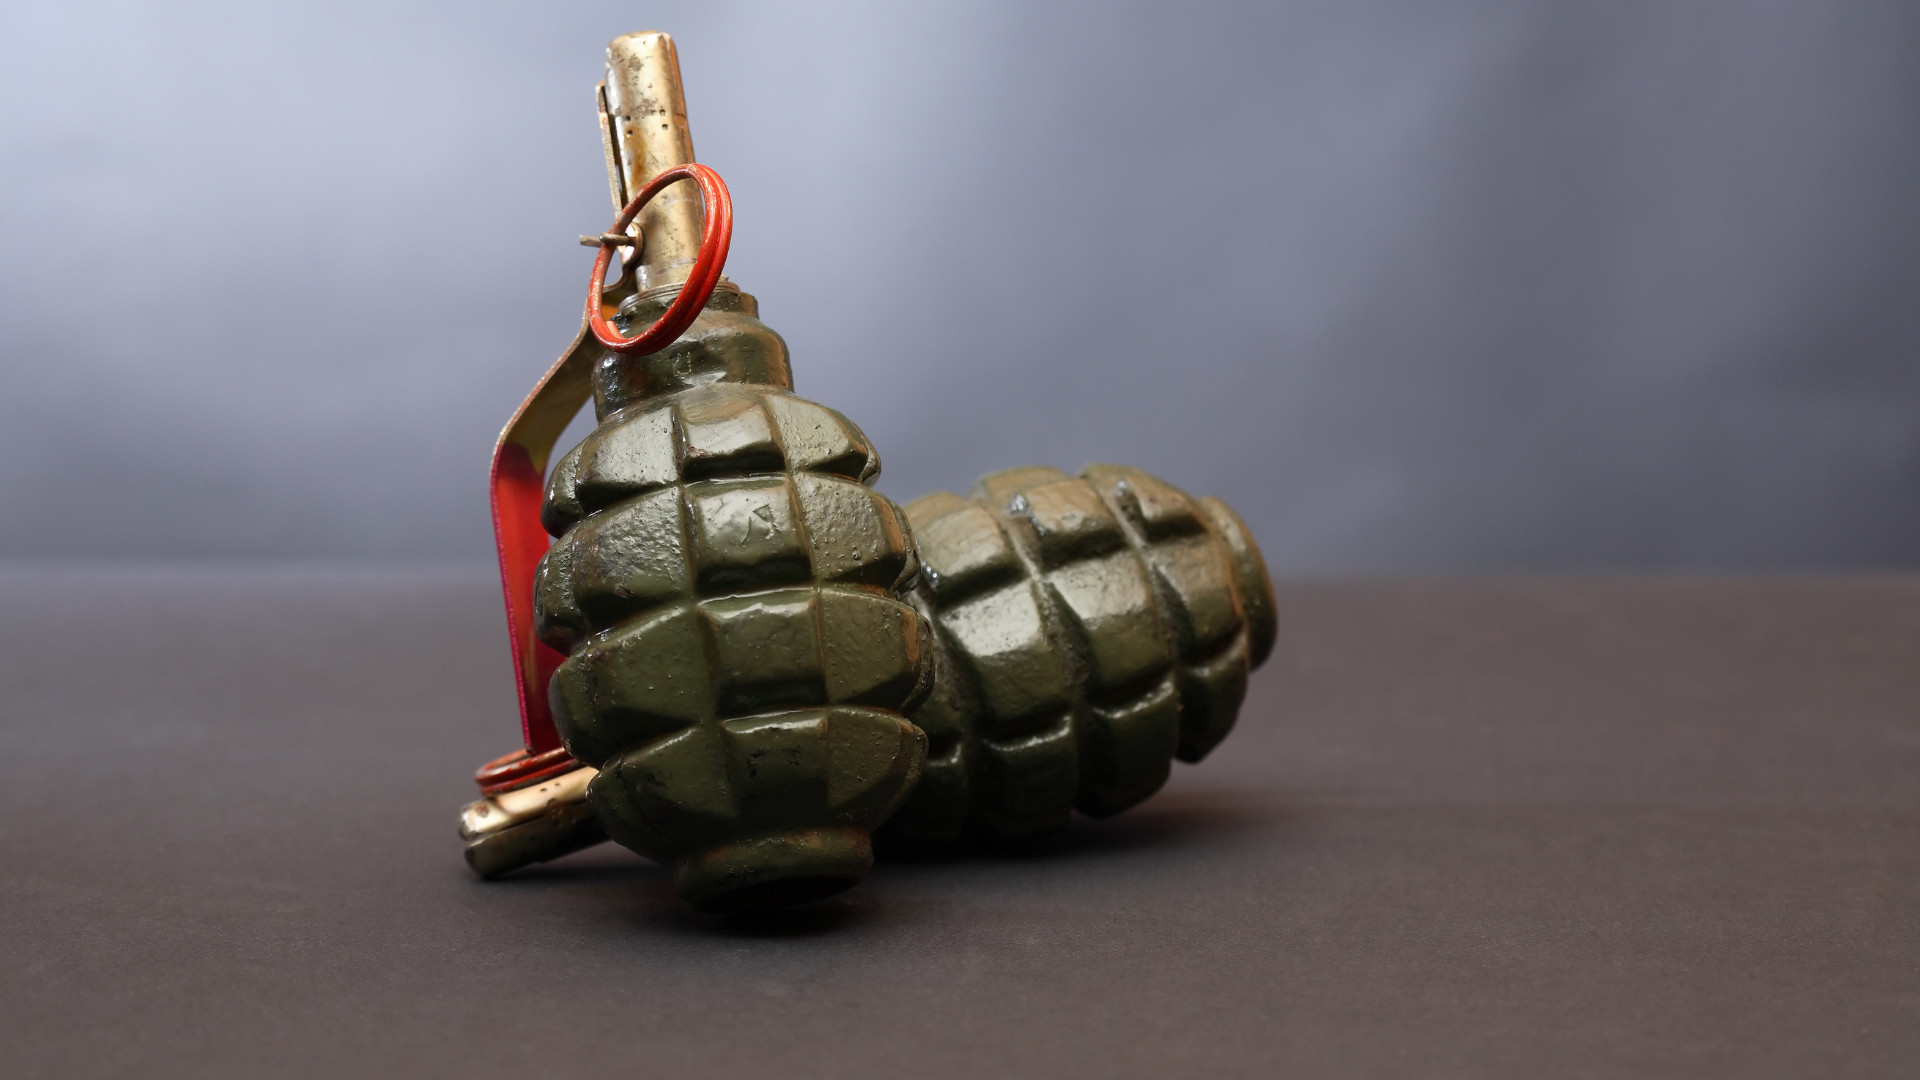 Суд обязал несколько школ Петербурга закупить макеты военного оружия для уроков НВП